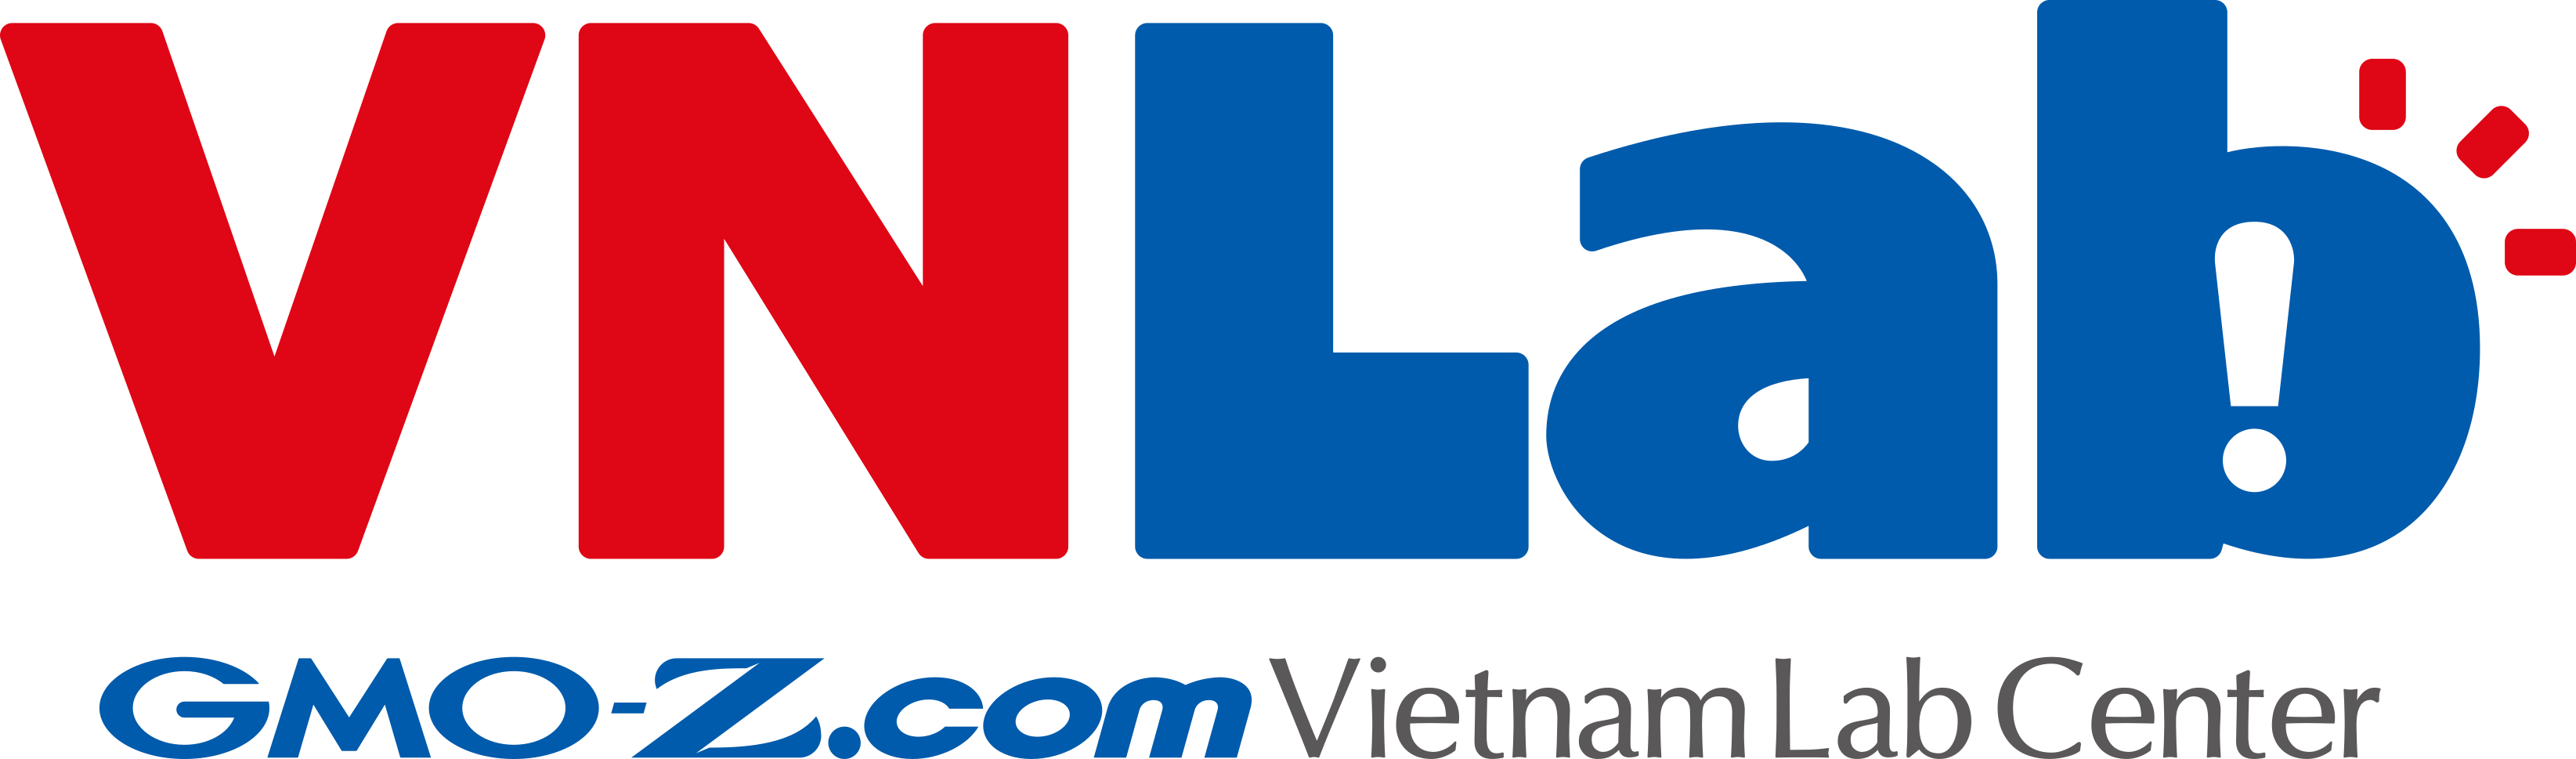 GMO-Z.com Việt Nam Lab Center logo